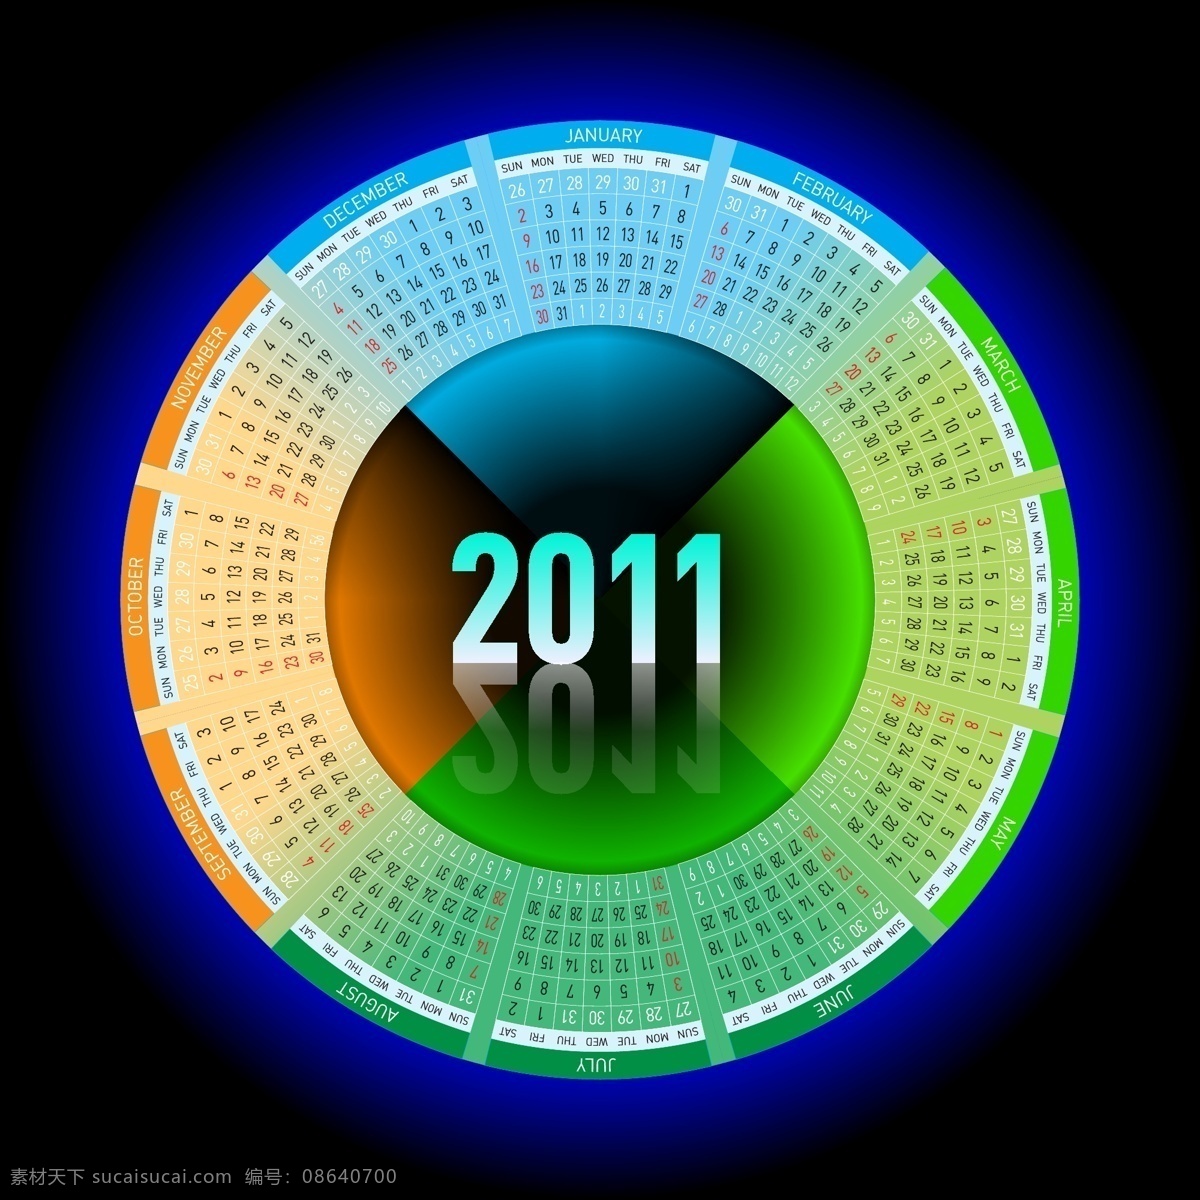 2011 圆形 日历 矢量图 其他矢量图